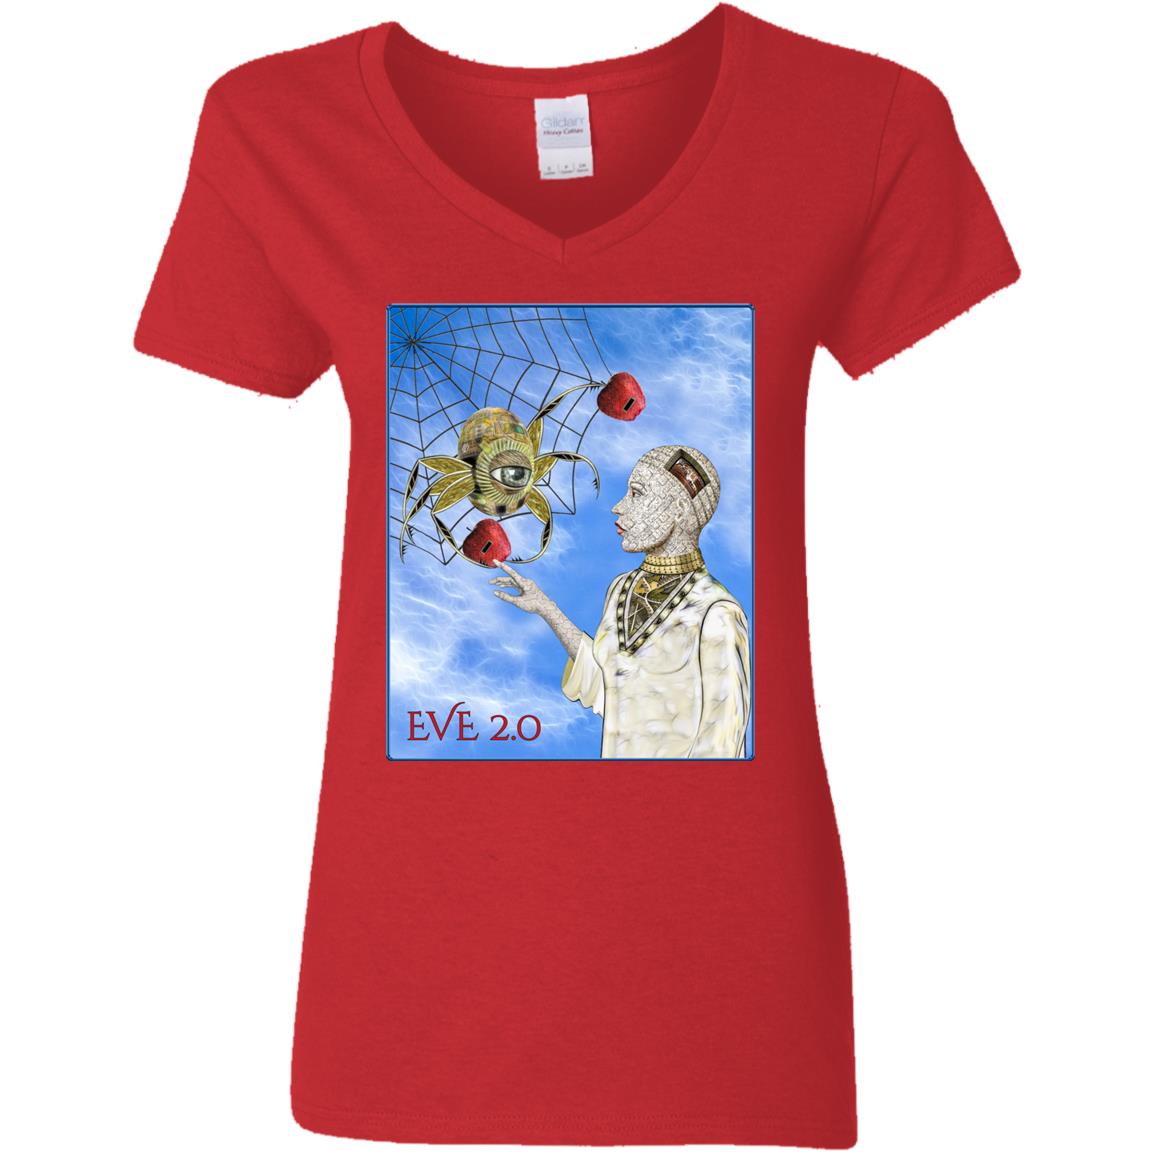 Eve 2.0 - Women's V-Neck T Shirt